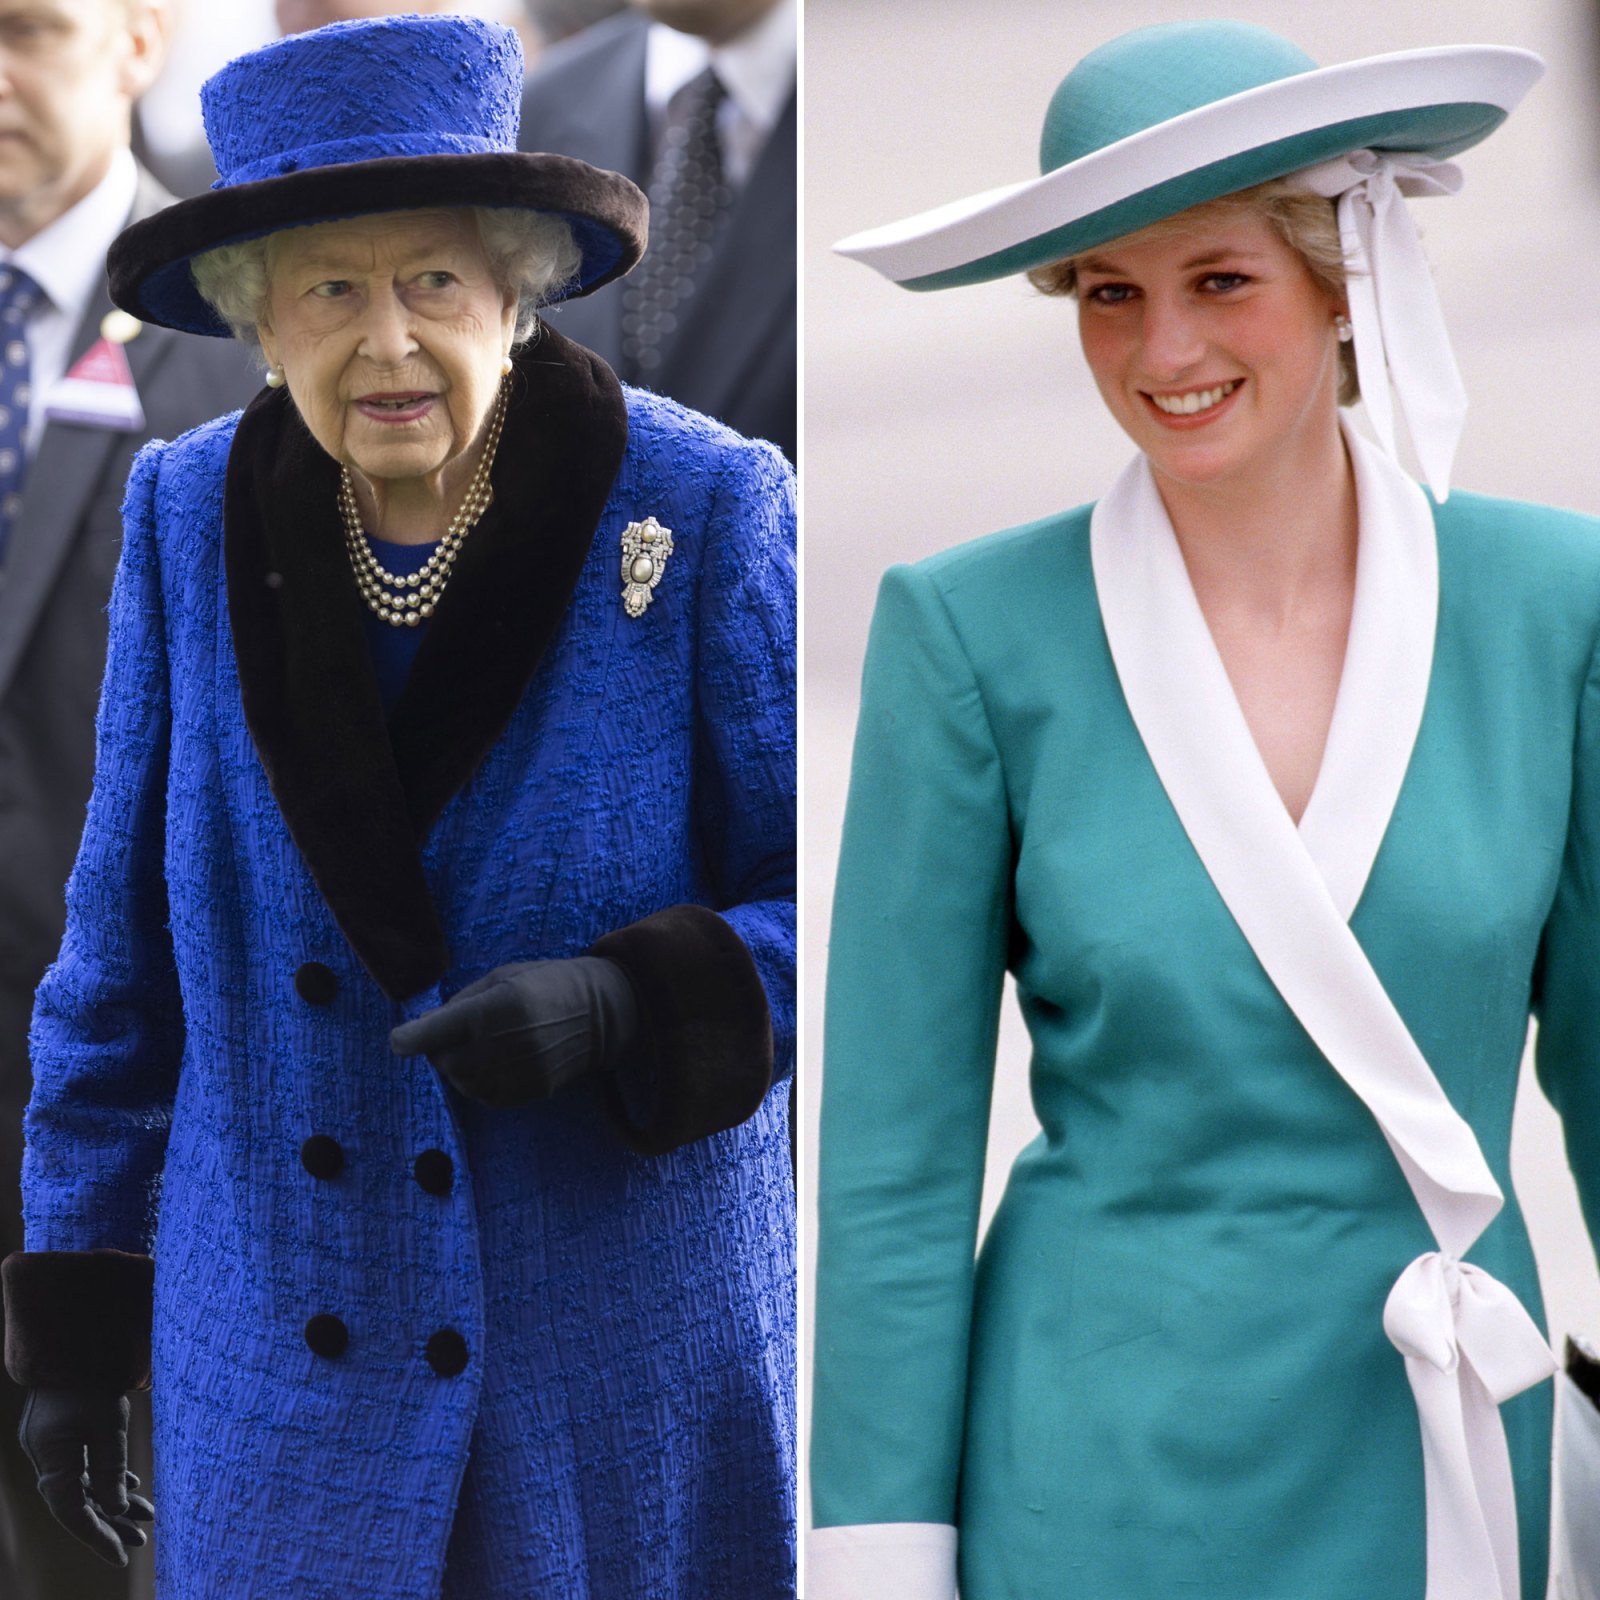 The Similarities Between Queen Elizabeth II and Princess Diana’s Funerals